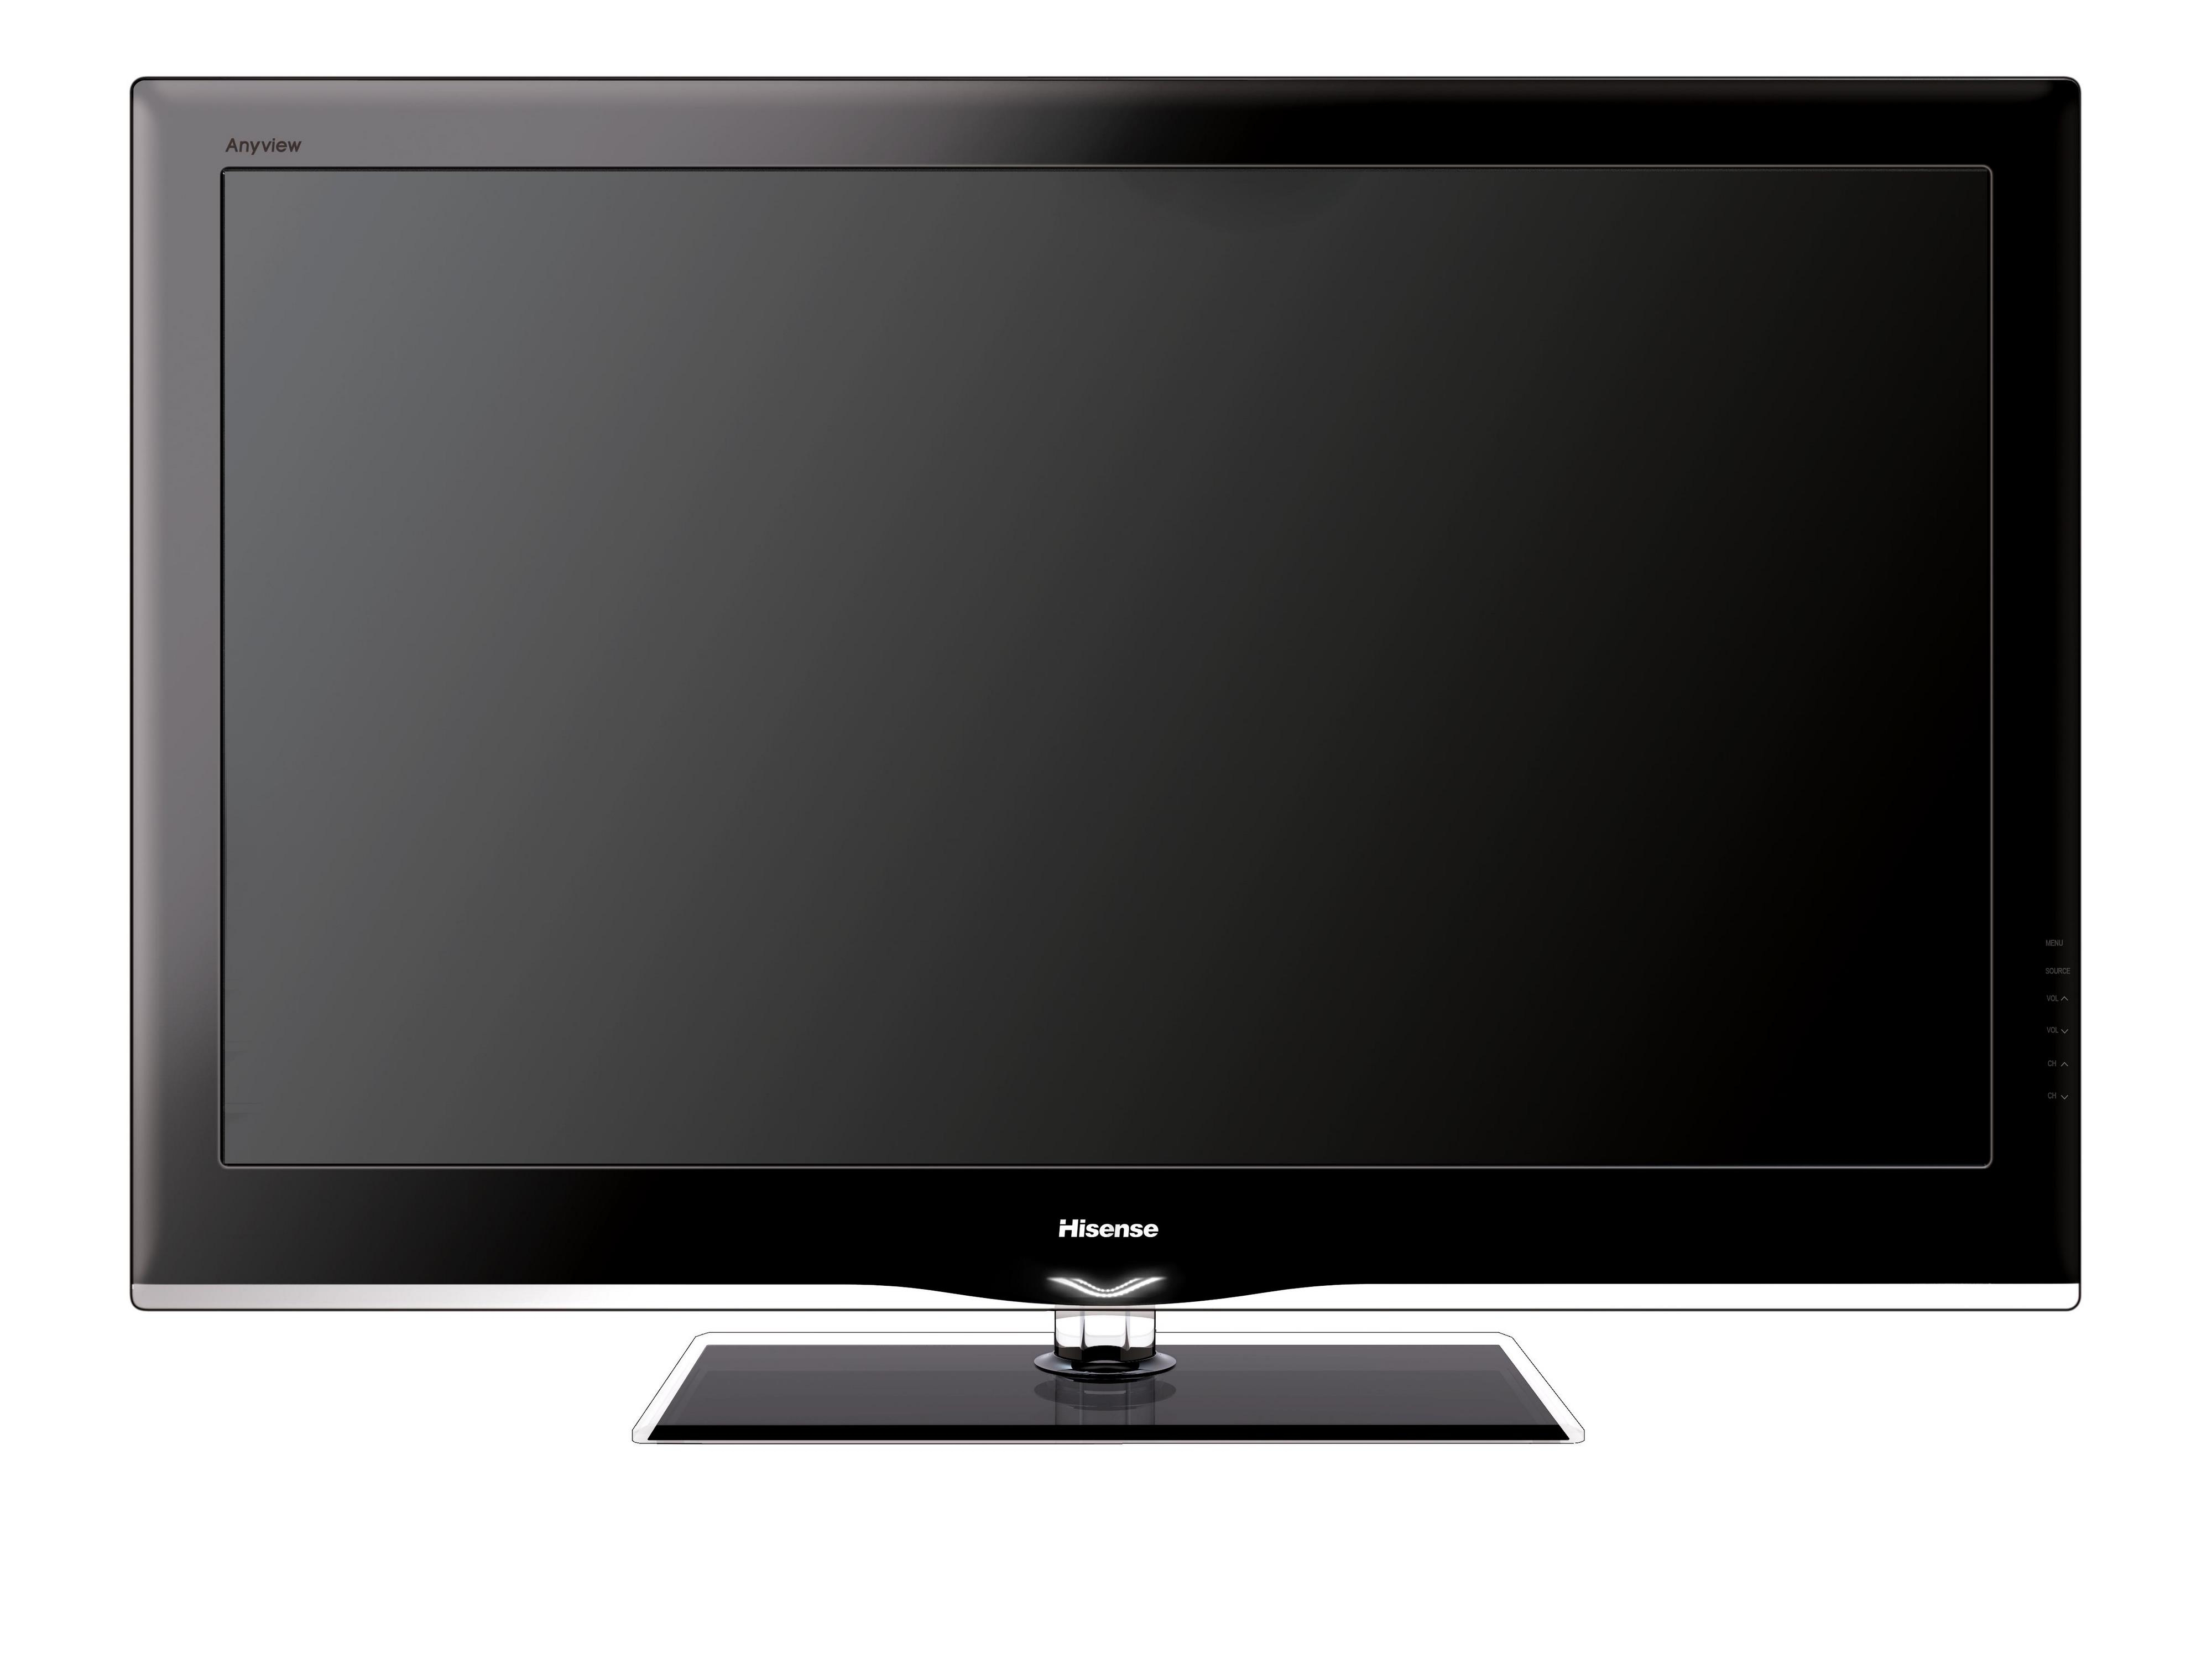 Куплю телевизор сони 32 дюйма. Телевизор Samsung le-40f96bd 40". Телевизор Samsung le-40a454c1 40". Samsung PS-50p96fd. Телевизор Hisense 32 дюйма.